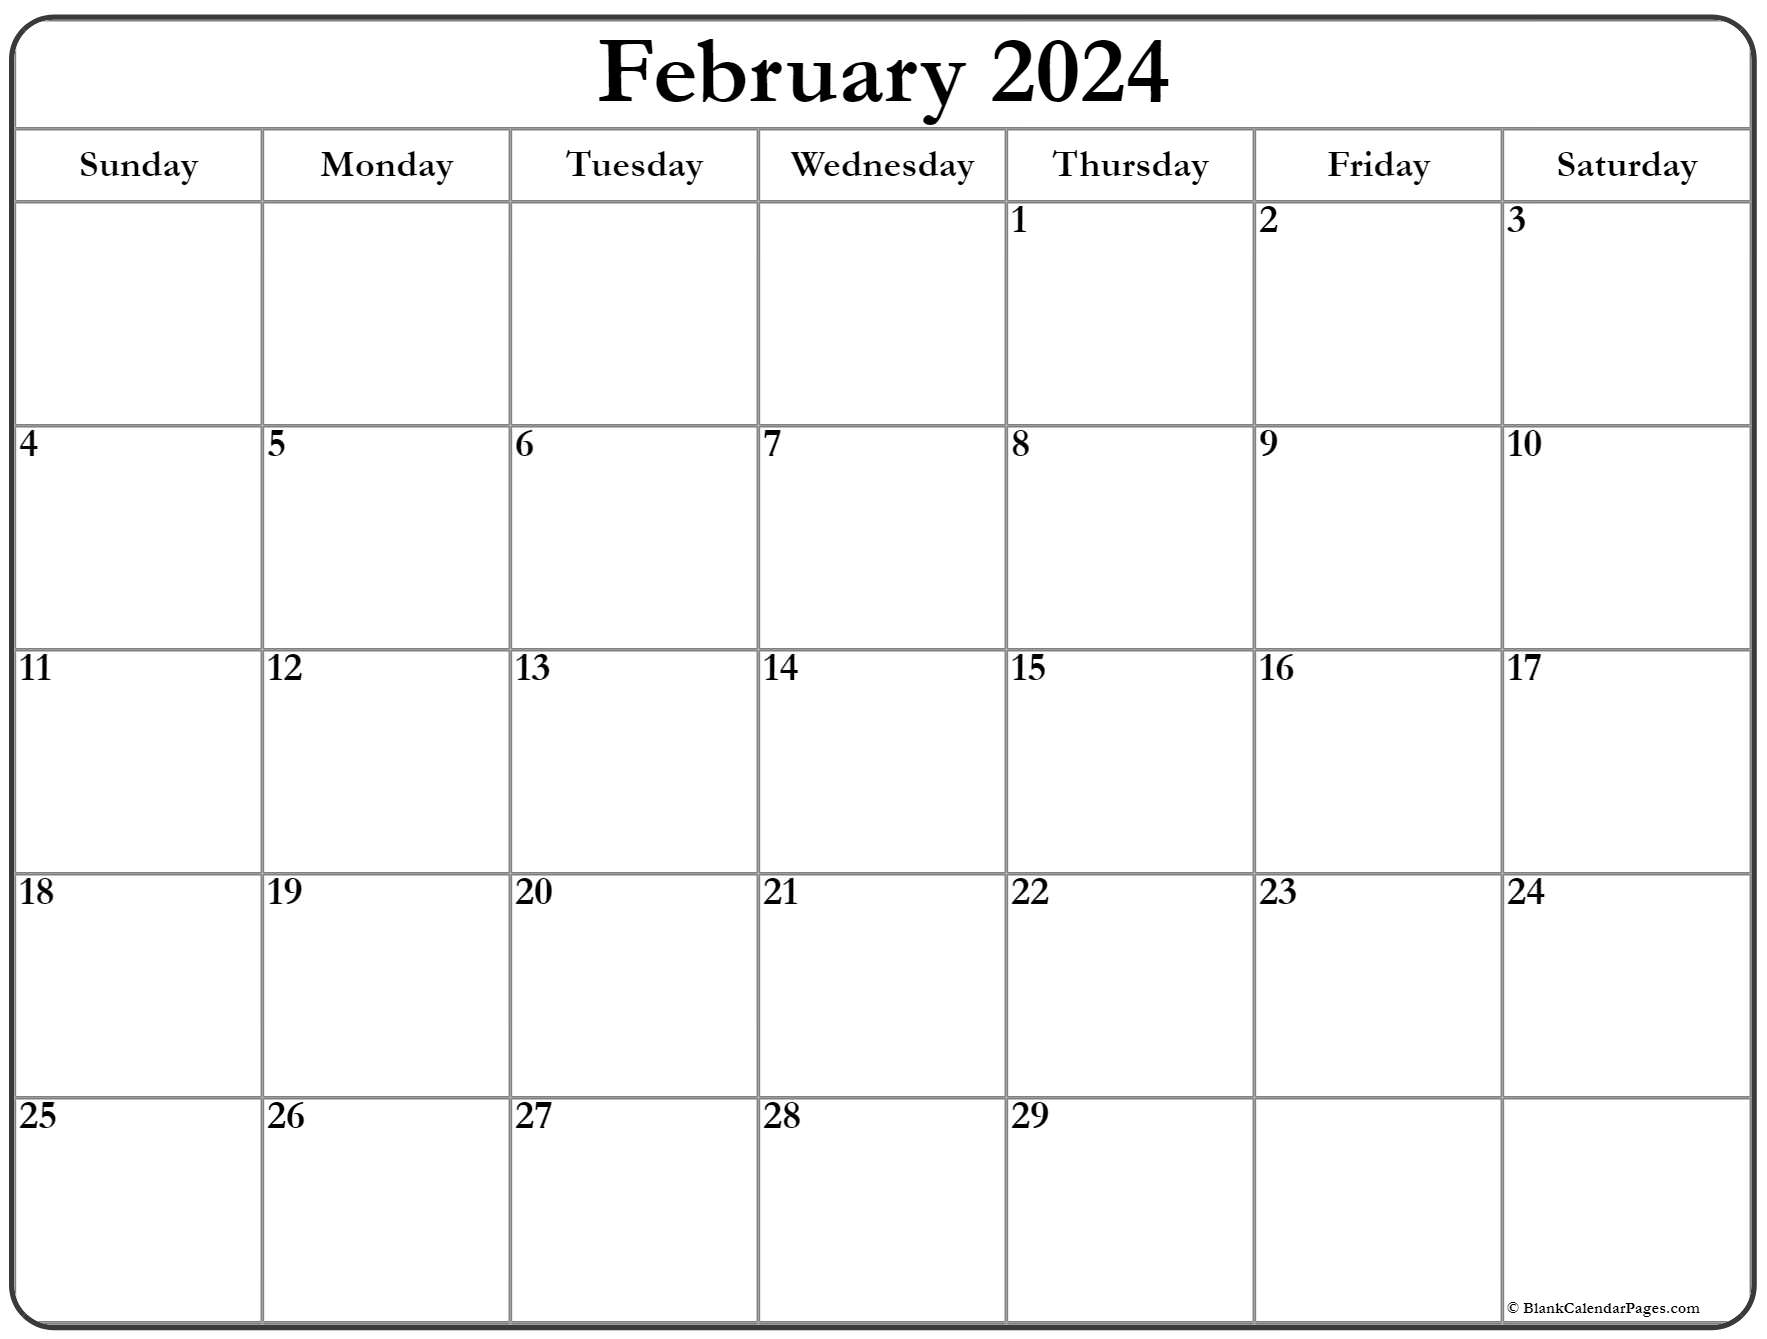 february-2023-calendar-printable-february-2023-calendar-free